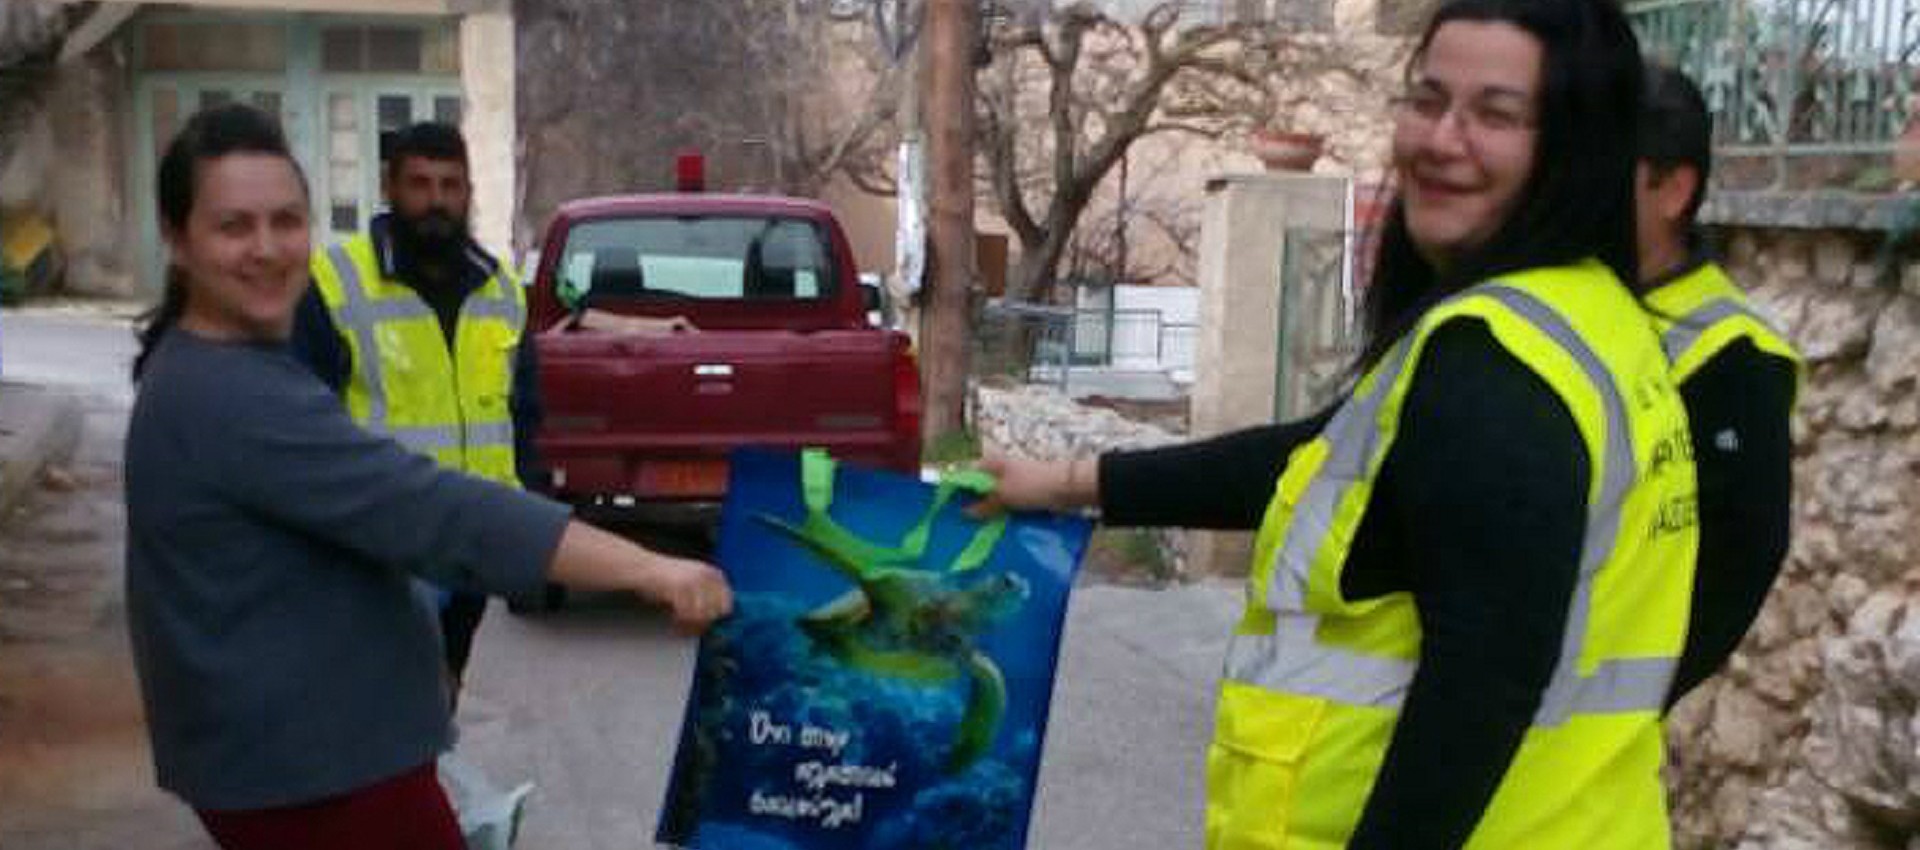 «Όχι στην πλαστική σακούλα» το σύνθημα της ενημερωτικής εκστρατείας του Δήμου Οροπεδίου Λασιθίου που διένειμε δωρεάν στους κατοίκους σακούλες πολλαπλών χρήσεων